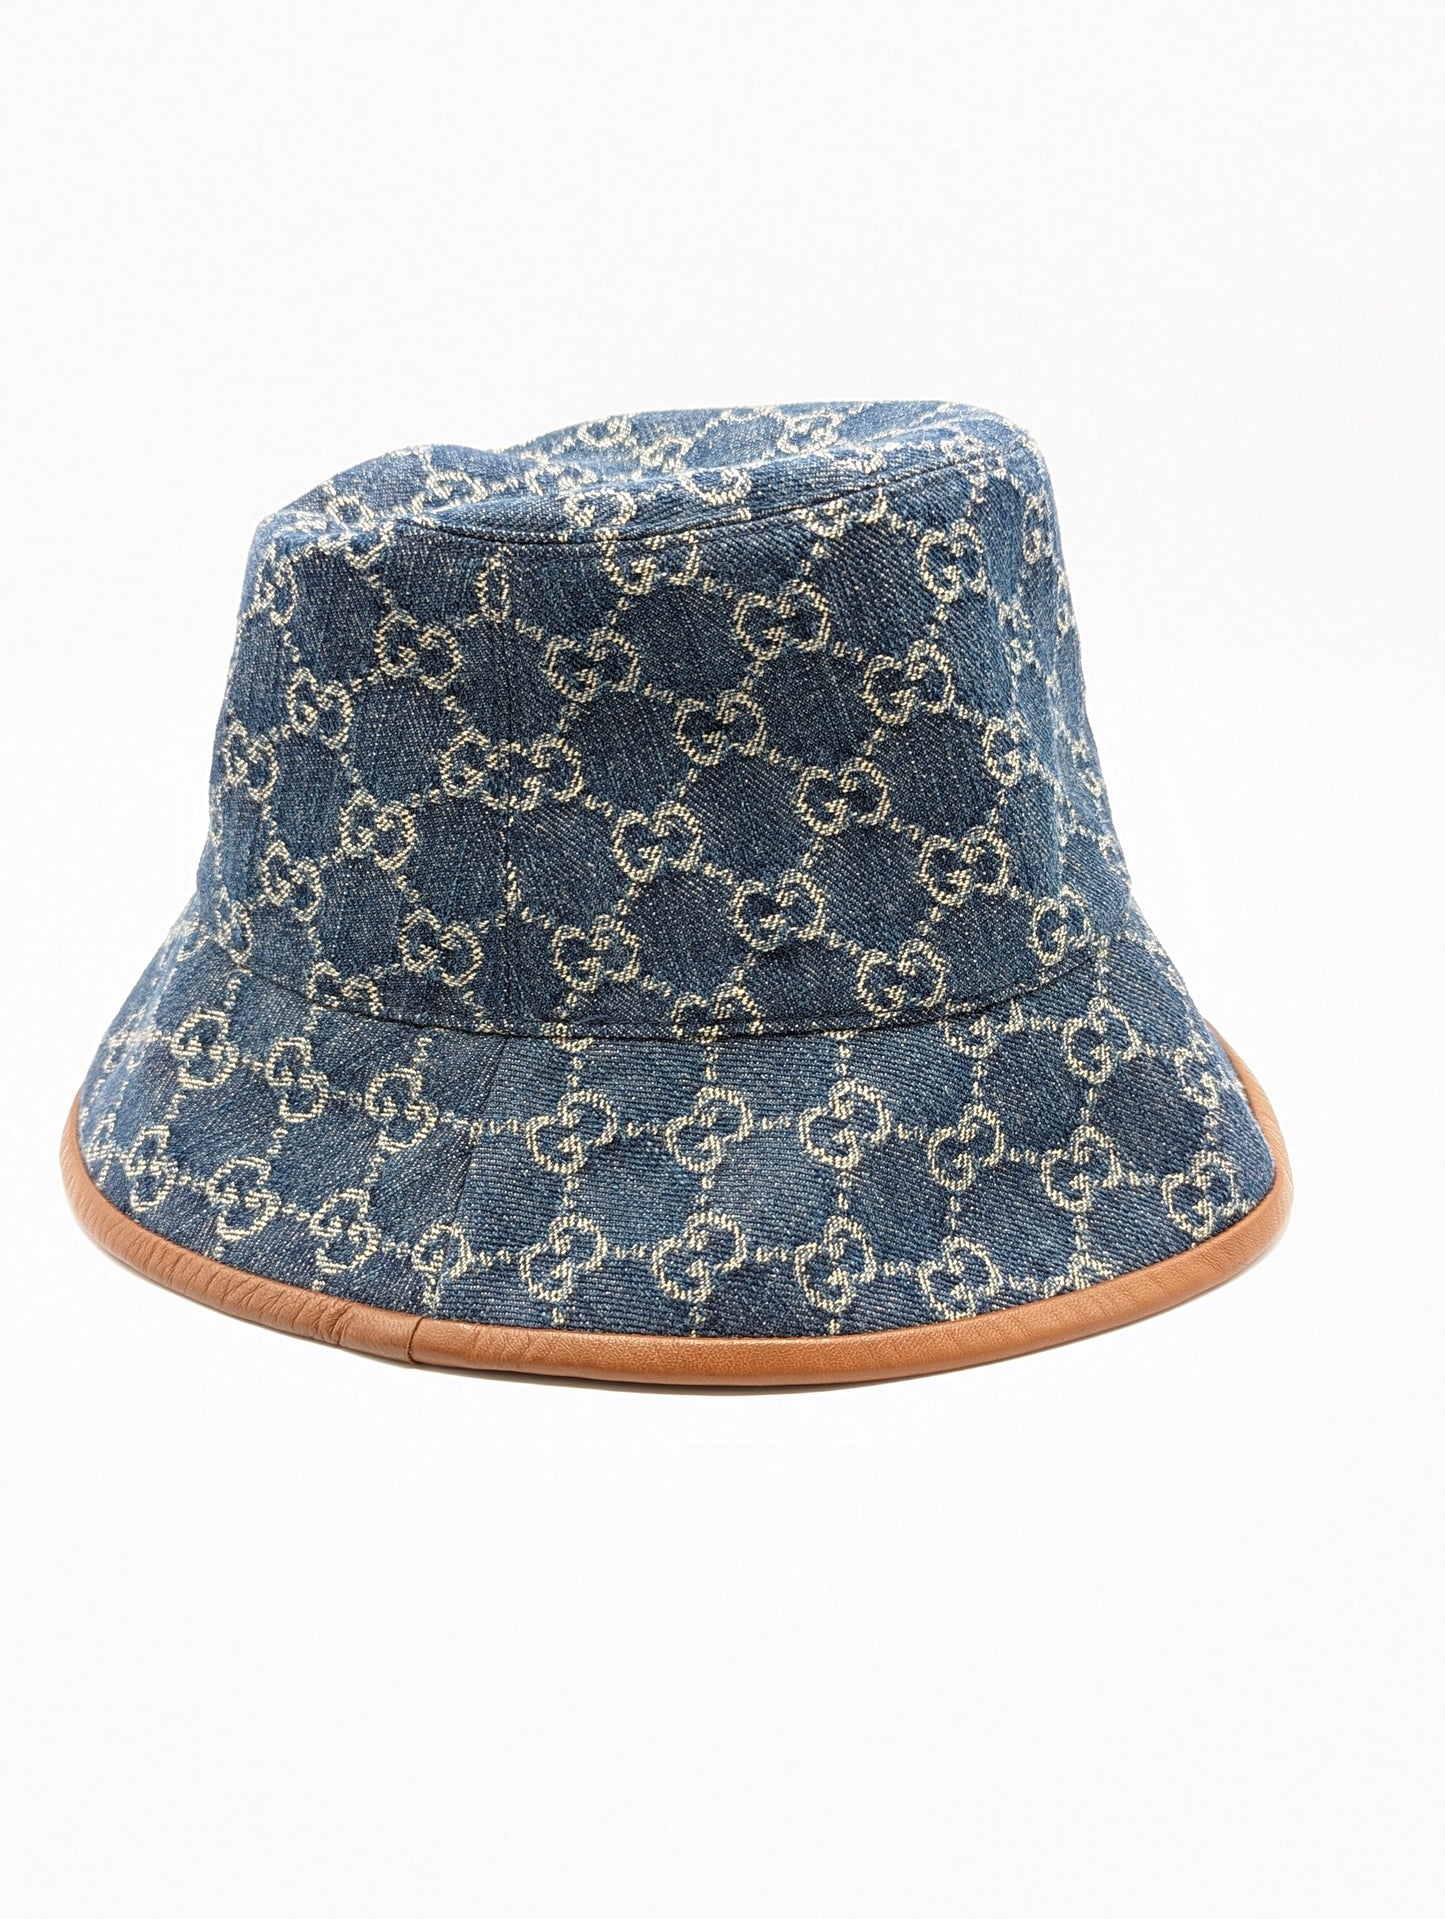 Gucci Denim Bucket Hat